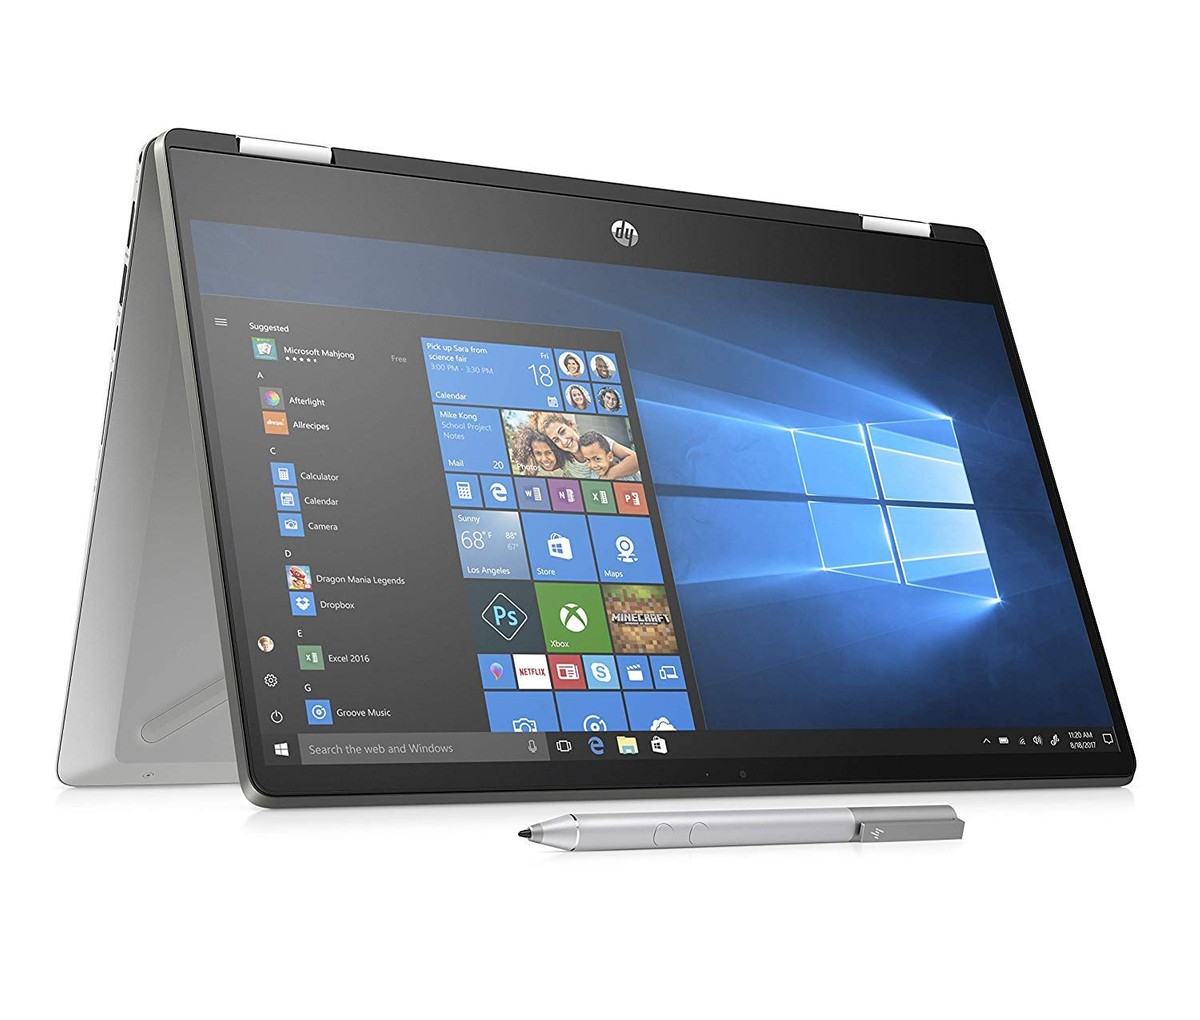 Notebook HP Pavilion x360 14-dh0041nl in offerta su Amazon al miglior